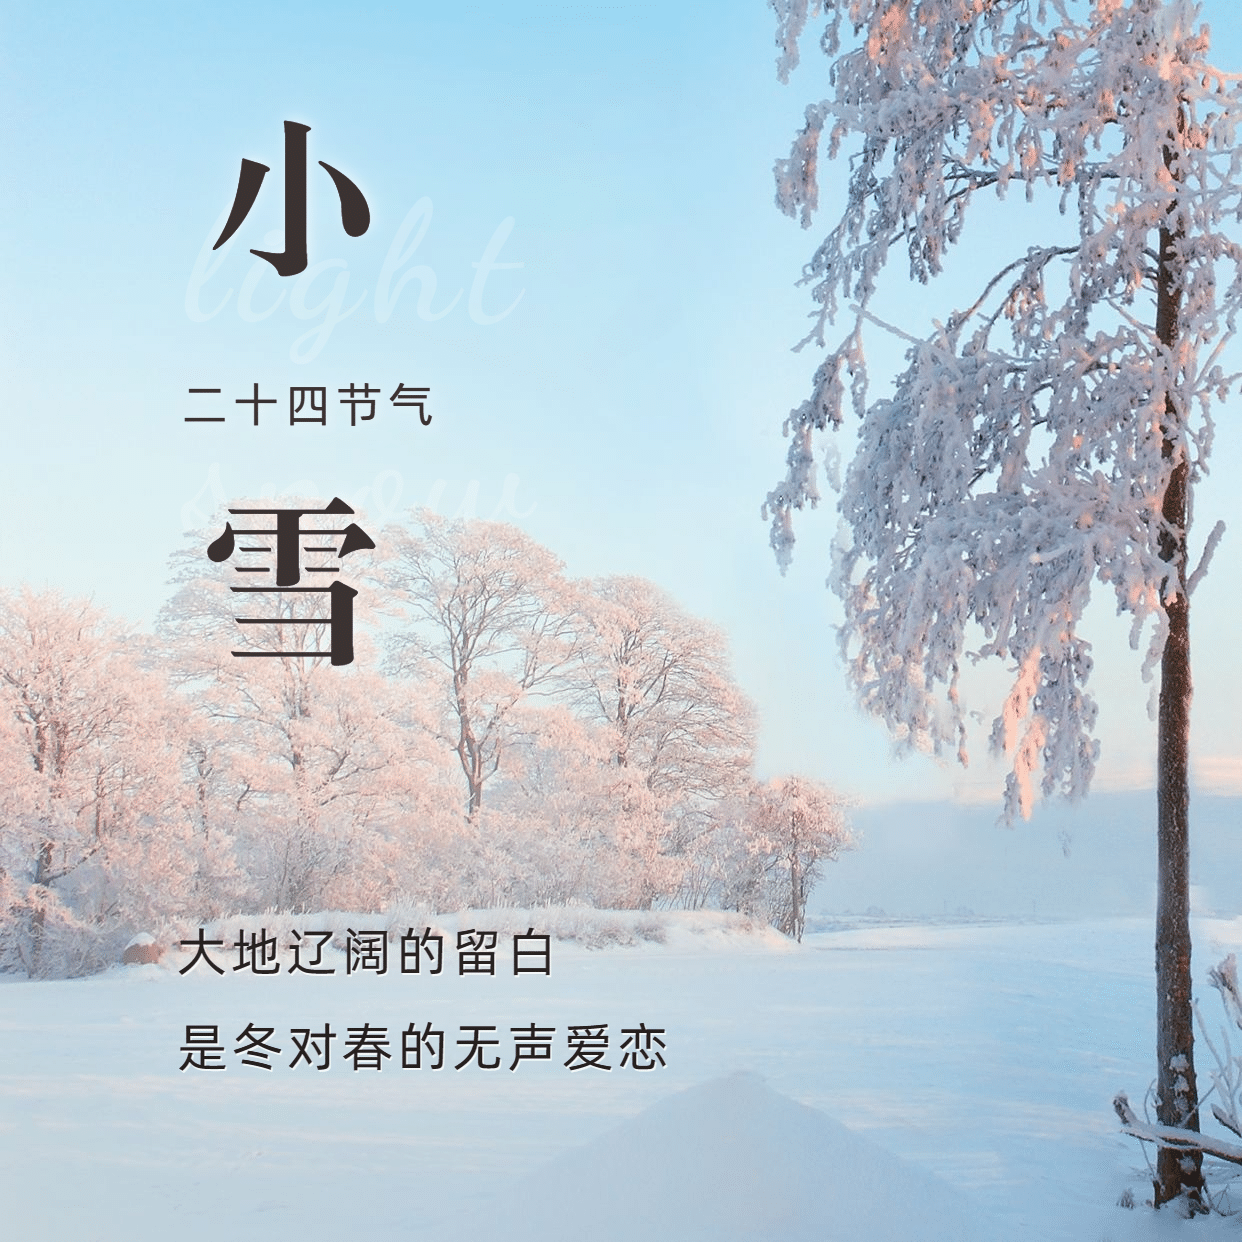 小雪节气祝福下雪天实景方形海报